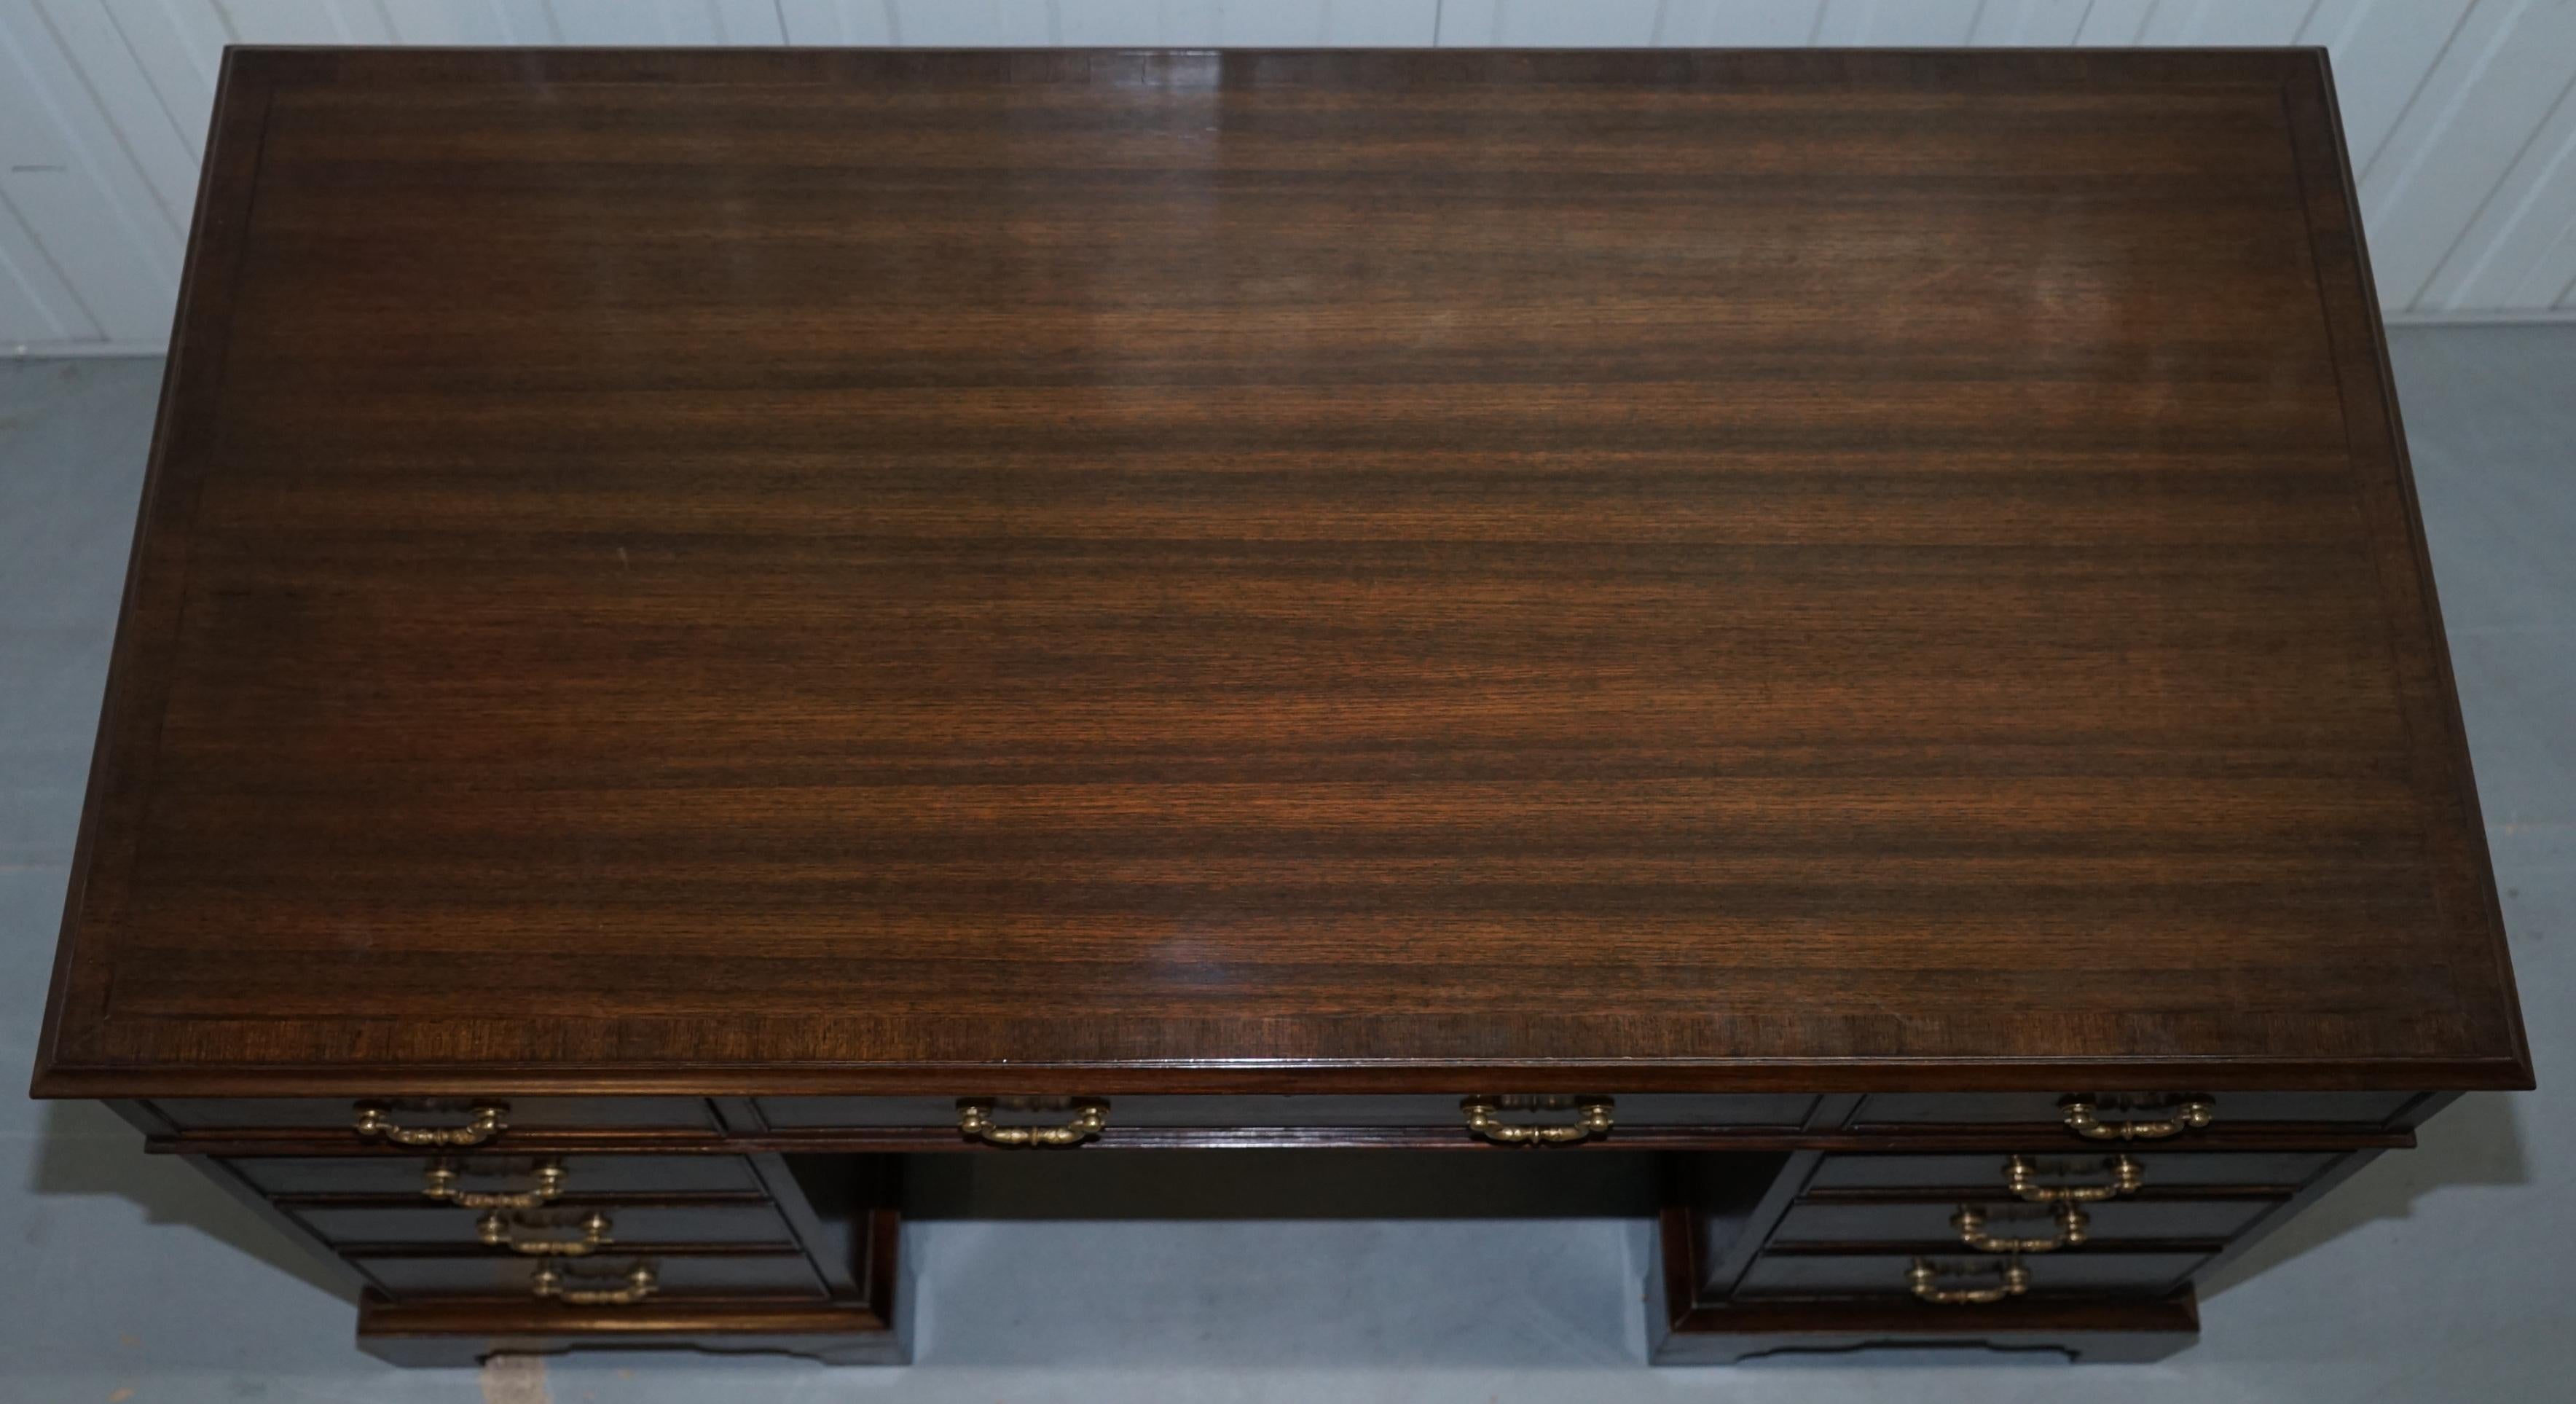 Victorian Vintage Stunning Large Solid Hardwood Twin Pedestal Partner Desk Rare Find